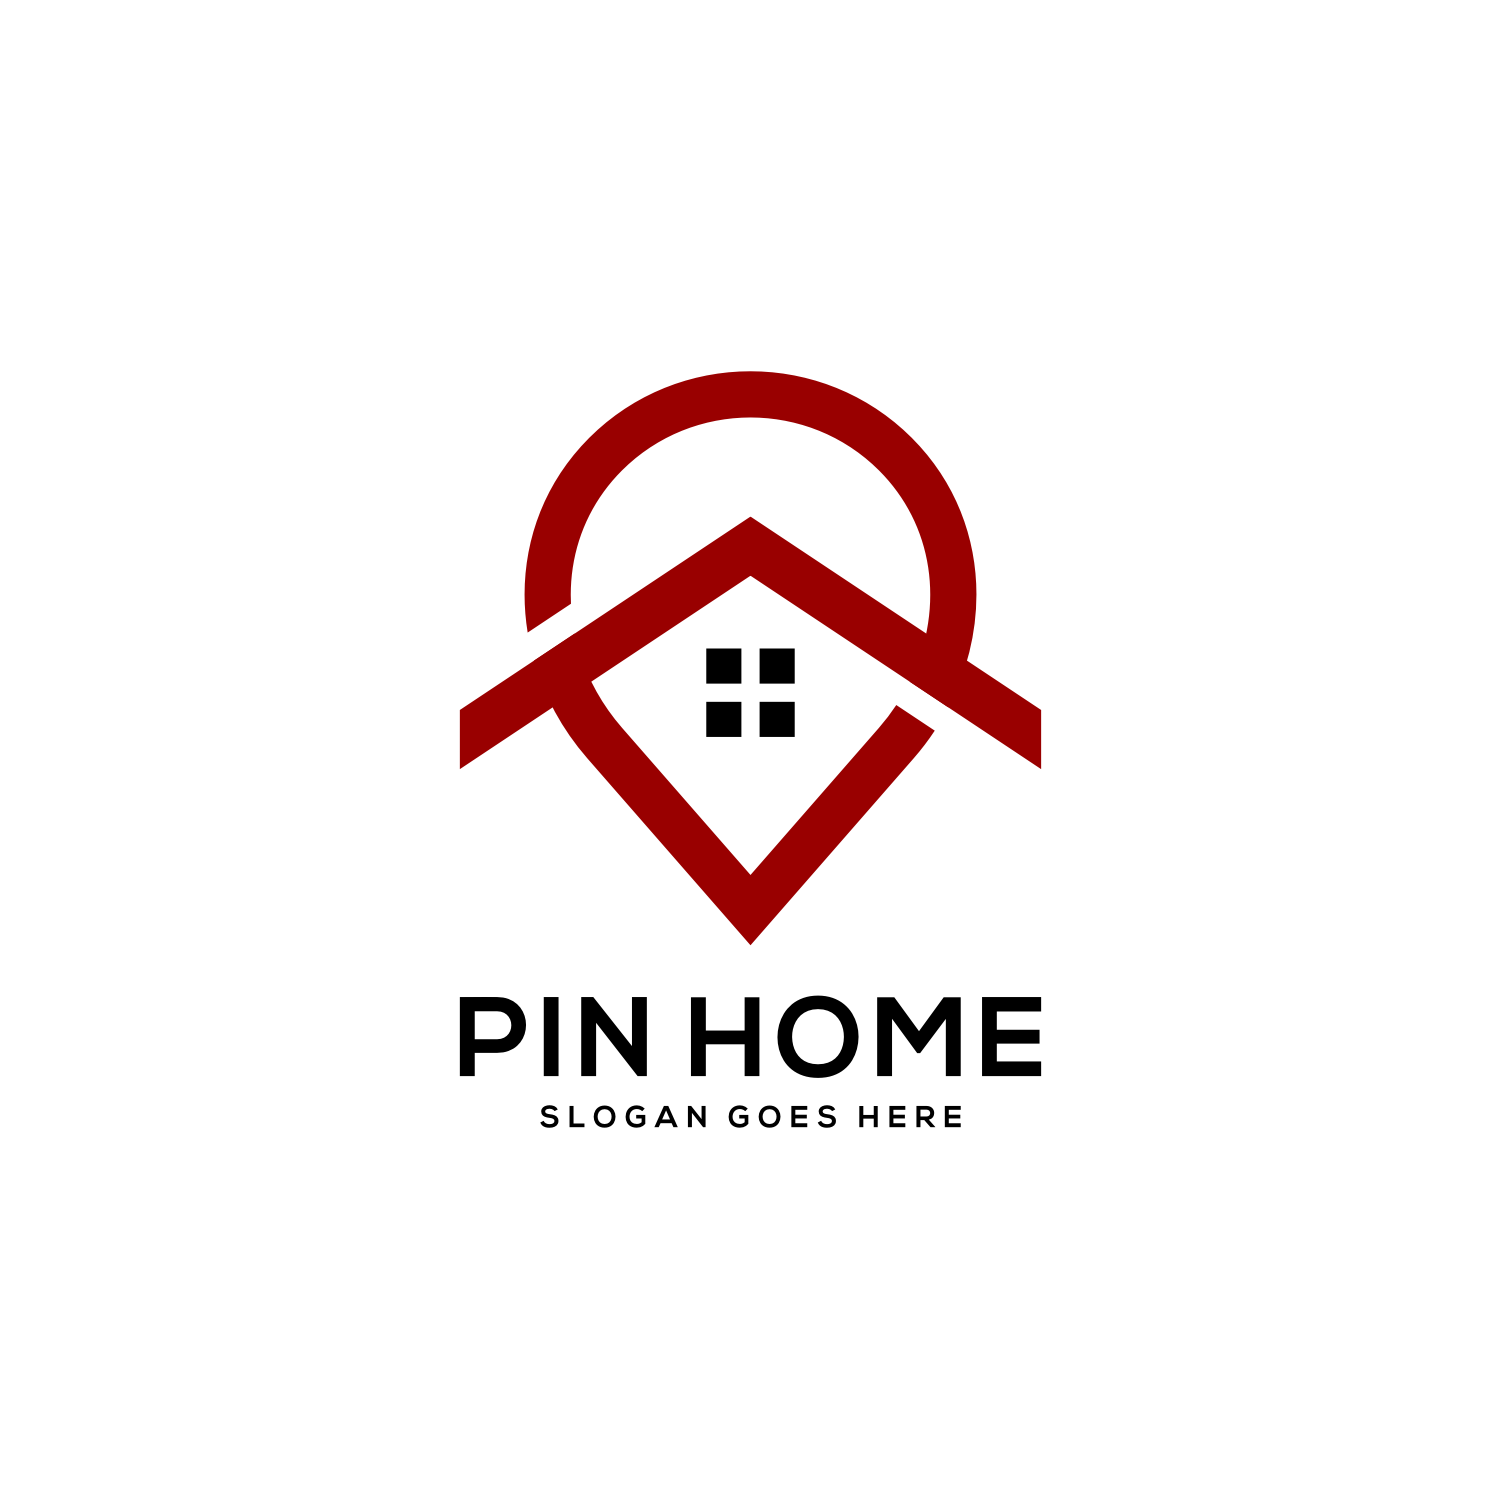 Pin Home Logo Vector Design cover image.